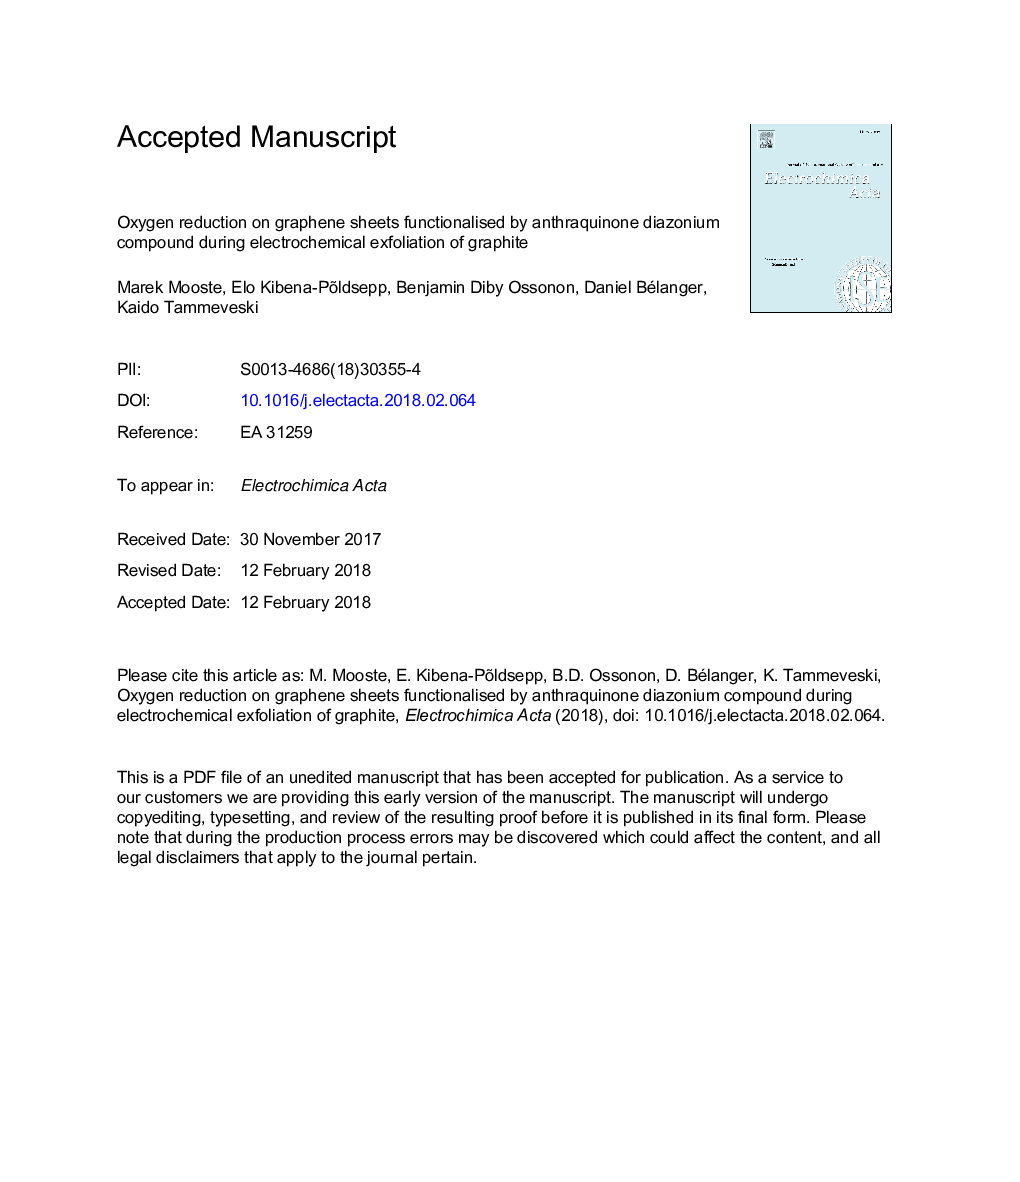 کاهش اکسیژن در ورق های گرافن که توسط ترکیب آنتاهارینون دیازونیم فعال می شود در طی لایه برداری الکتروشیمیایی گرافیت 